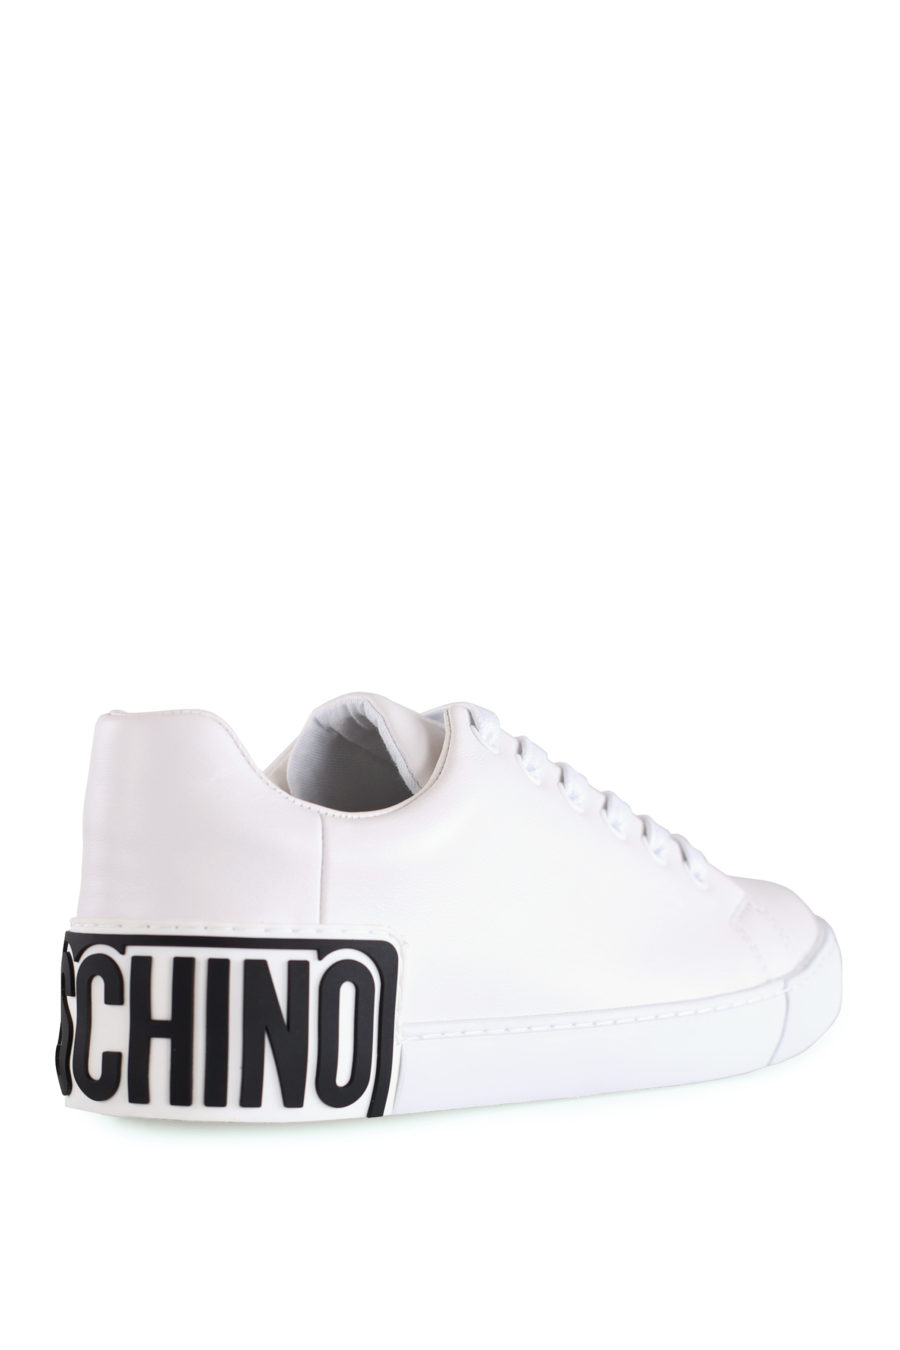 Zapatillas blancas con logo de goma - IMG 8486 copia